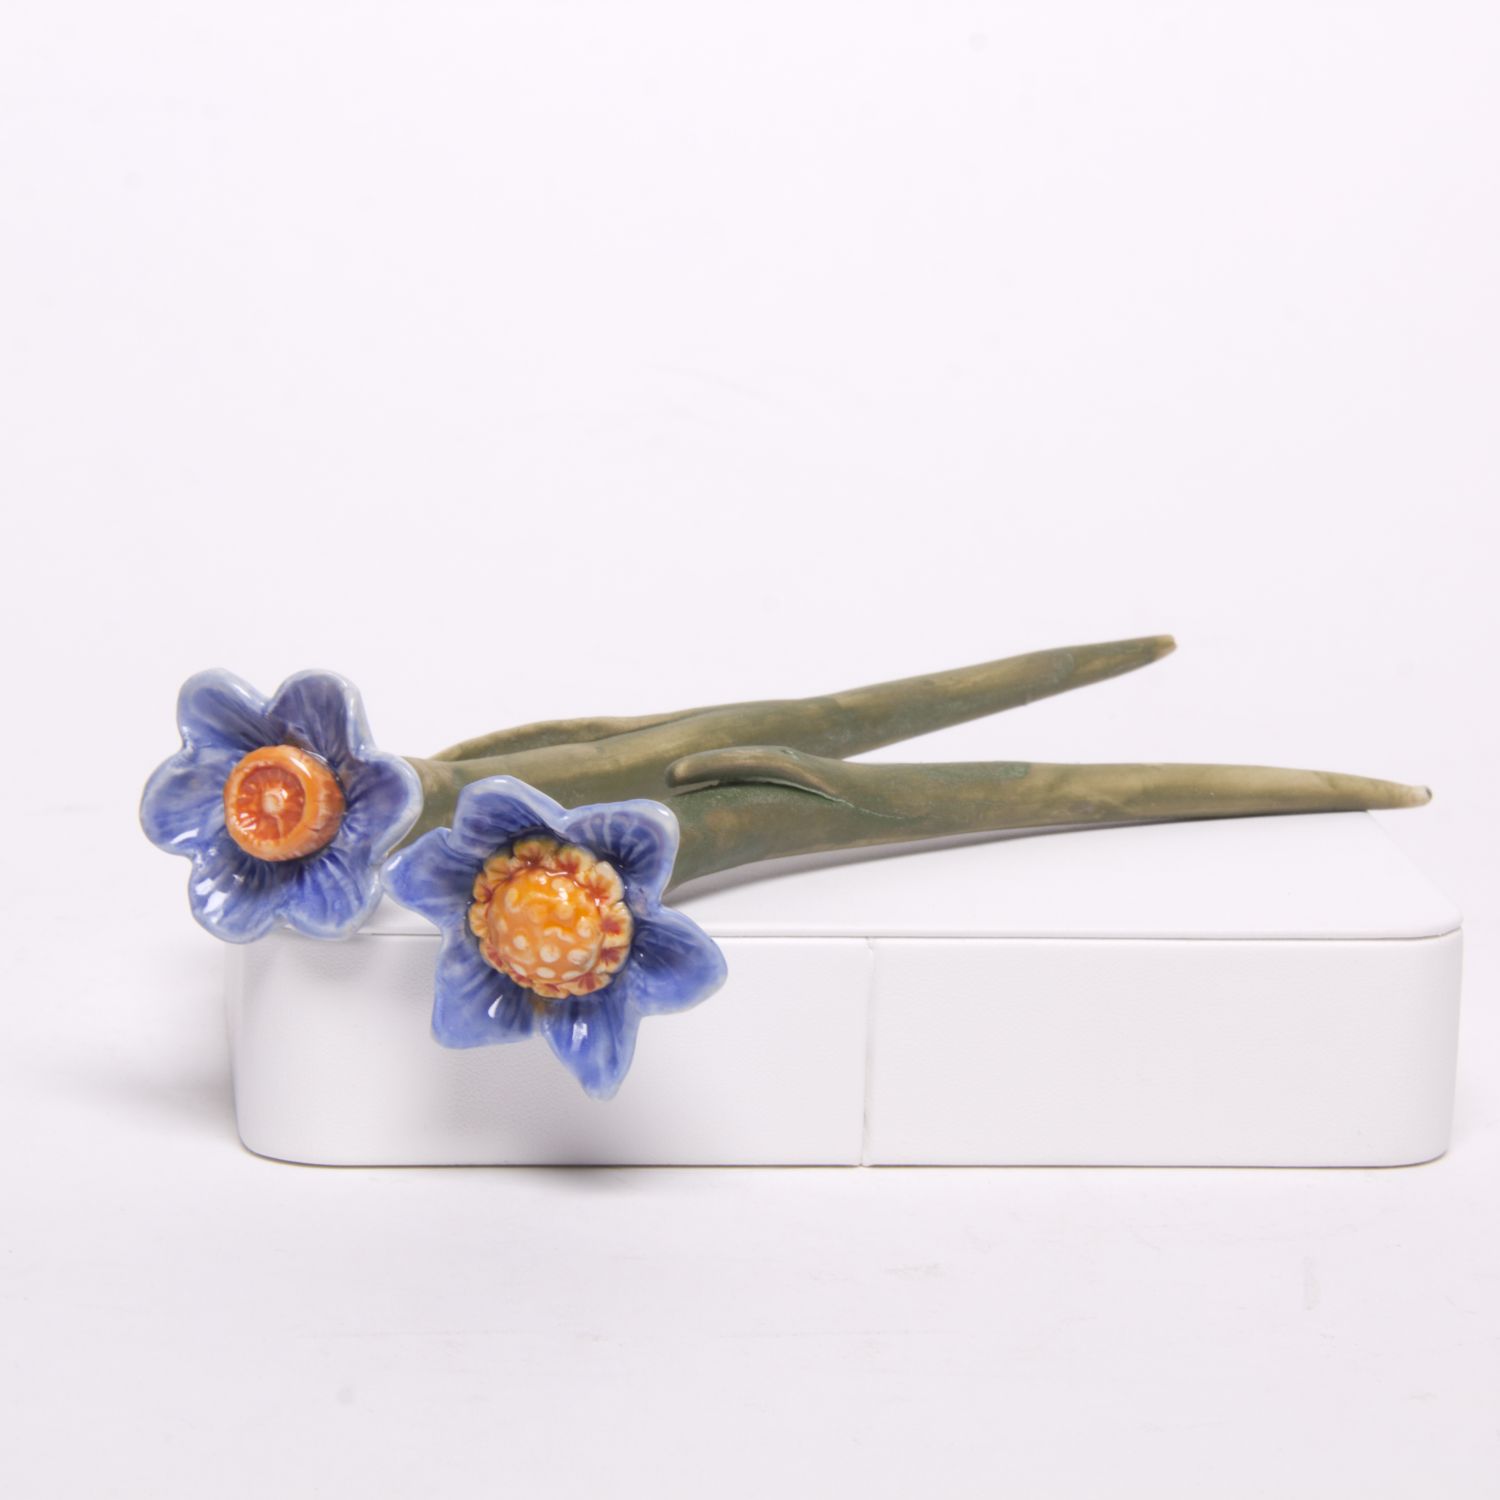 Eekta Trienekens: Narcissus Flowers (Each sold separately) Product Image 6 of 7